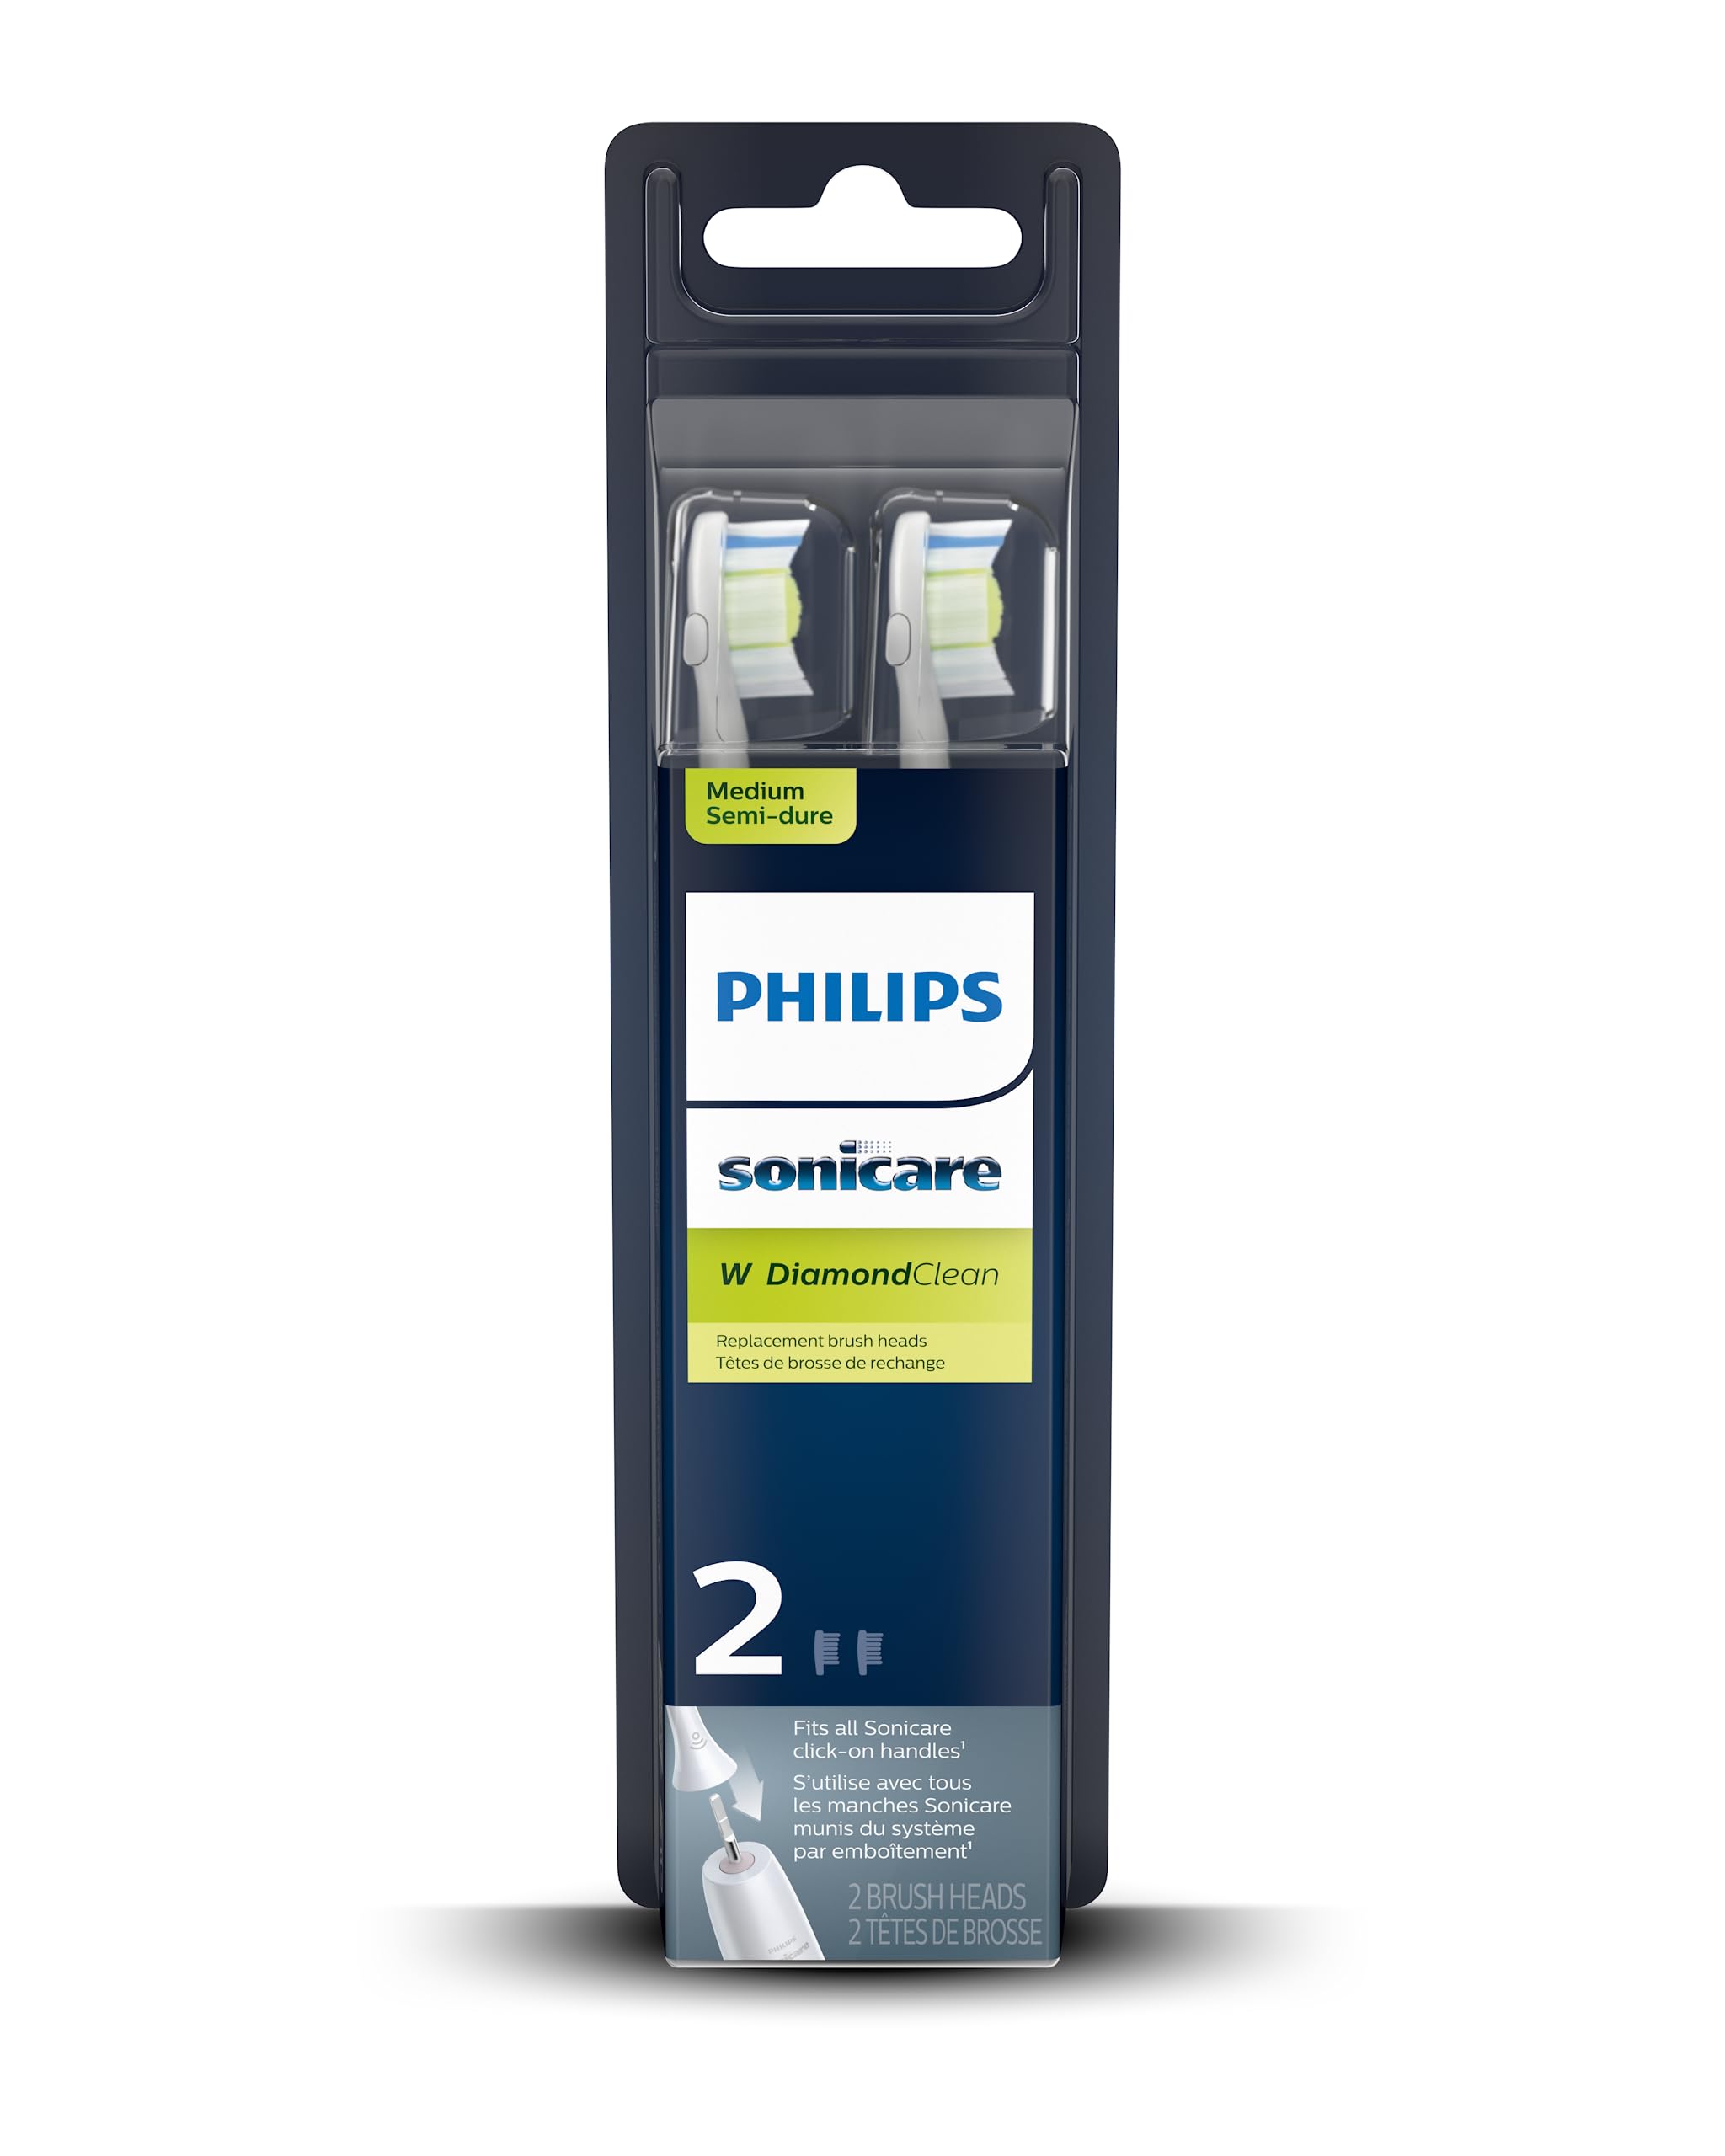 Philips Sonicare Genuine W DiamondClean Replacement Toothbrush Heads, 2 Brush Heads, White, HX6062/65